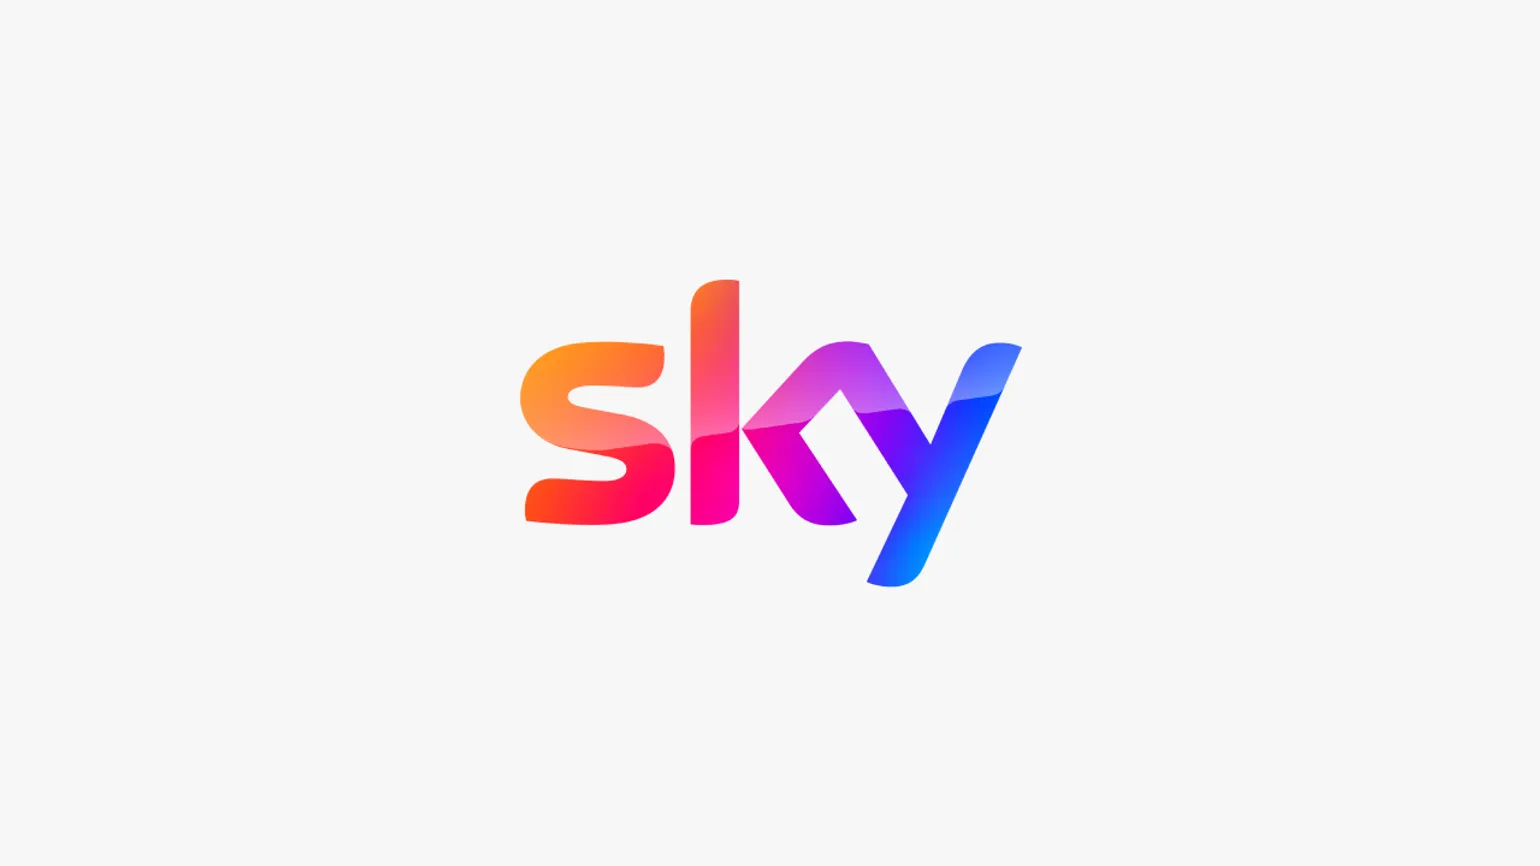 Sky Mobile SIM Deals